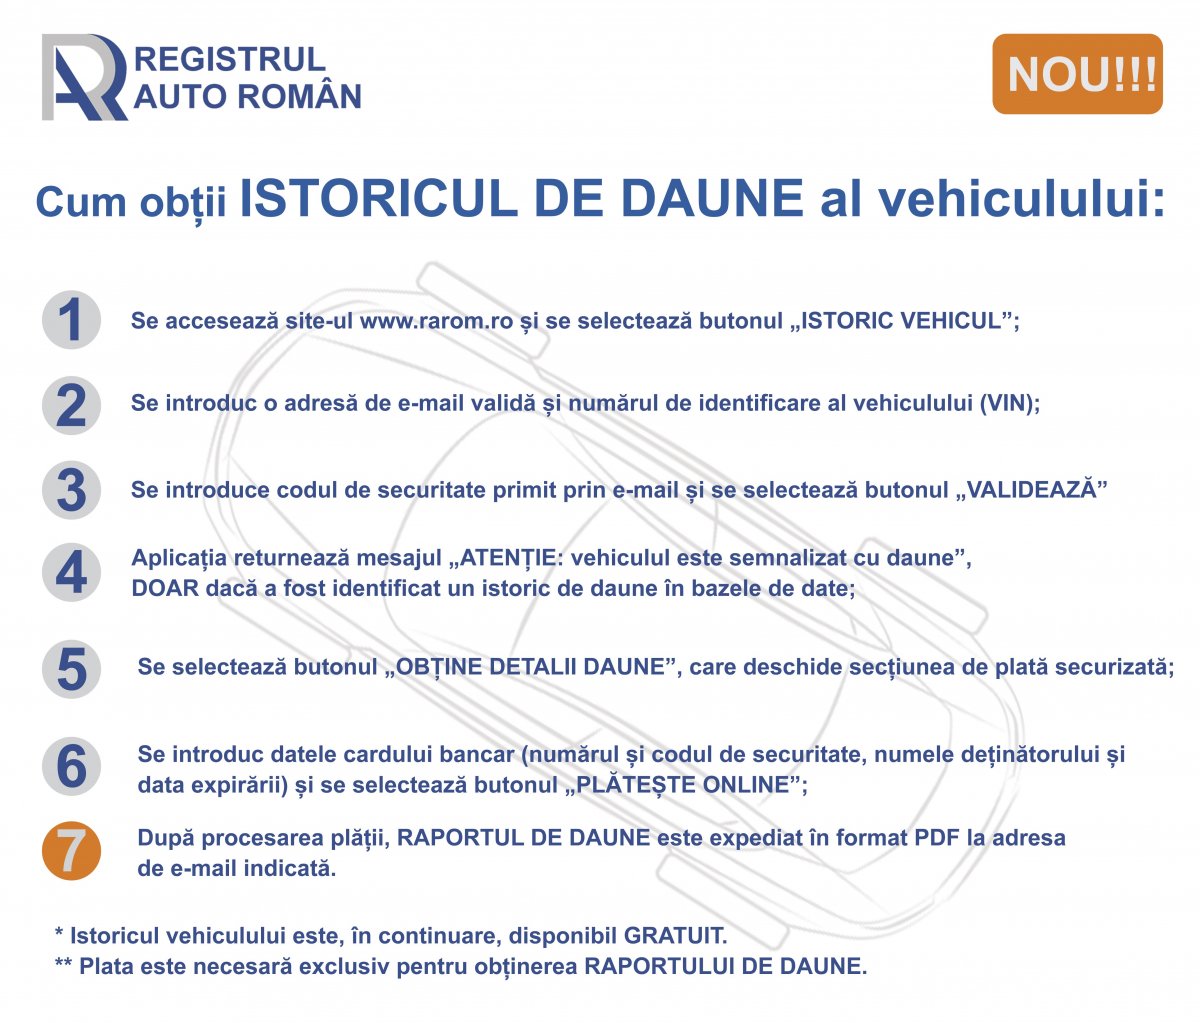 Registrul Auto Român pune la dispoziția clienților un nou serviciu: Istoric Vehicul